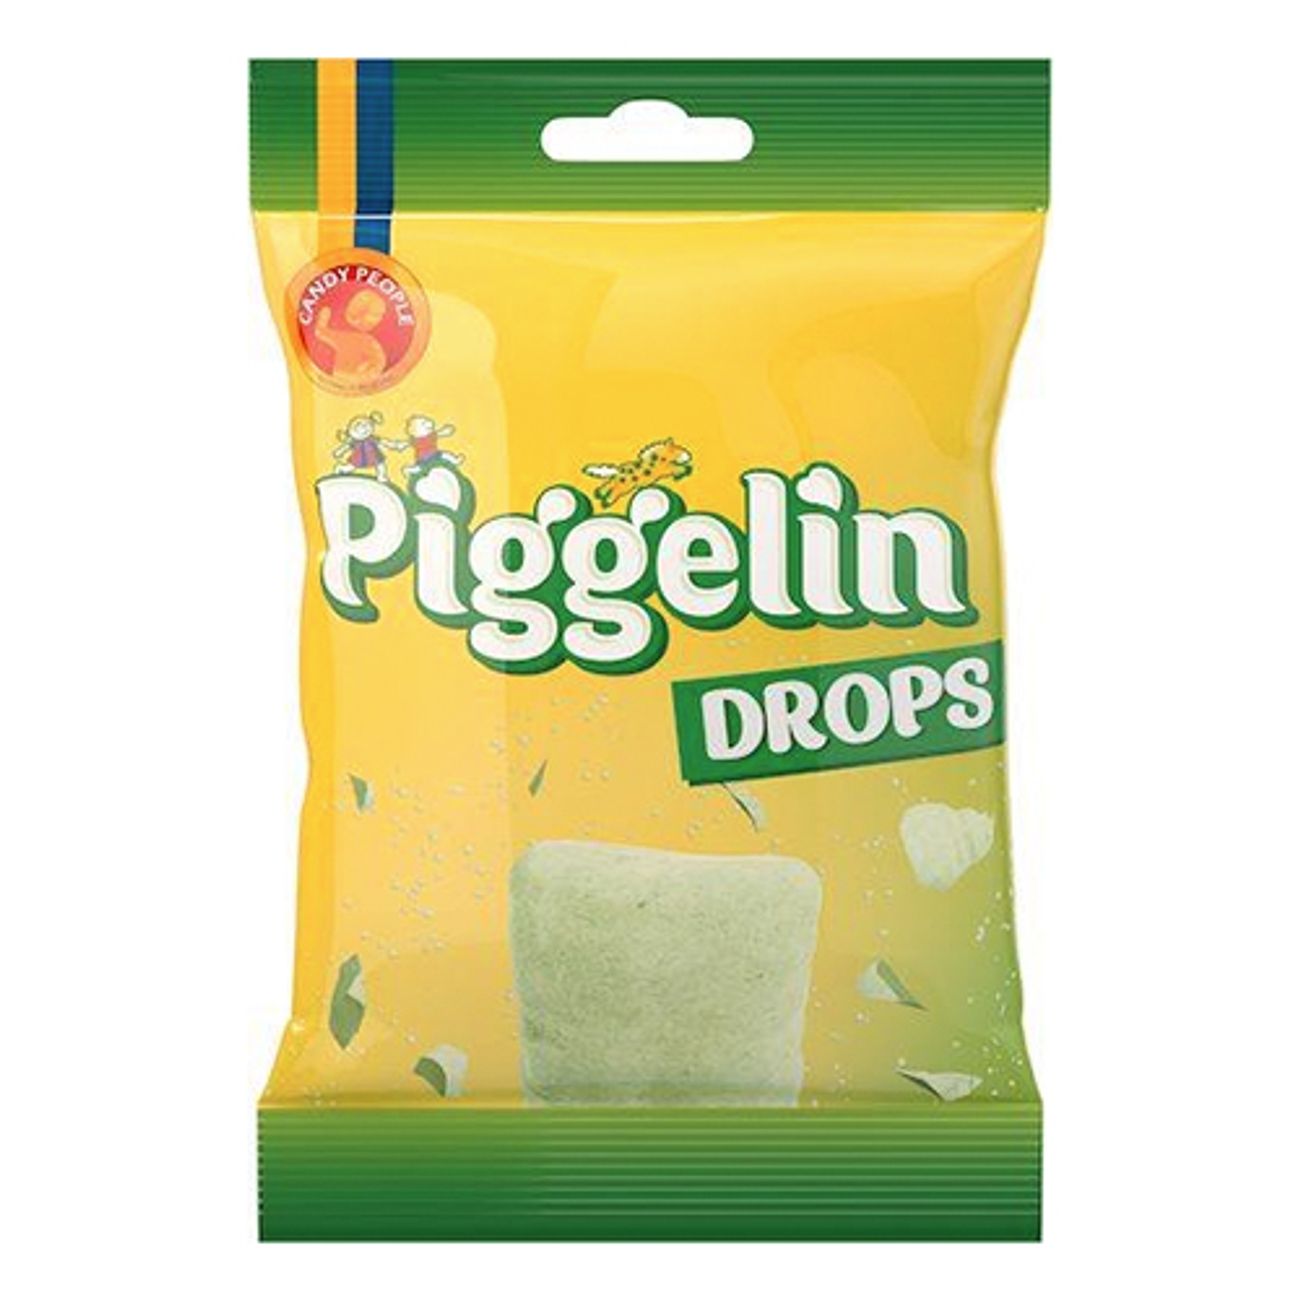 piggelin-drops-1